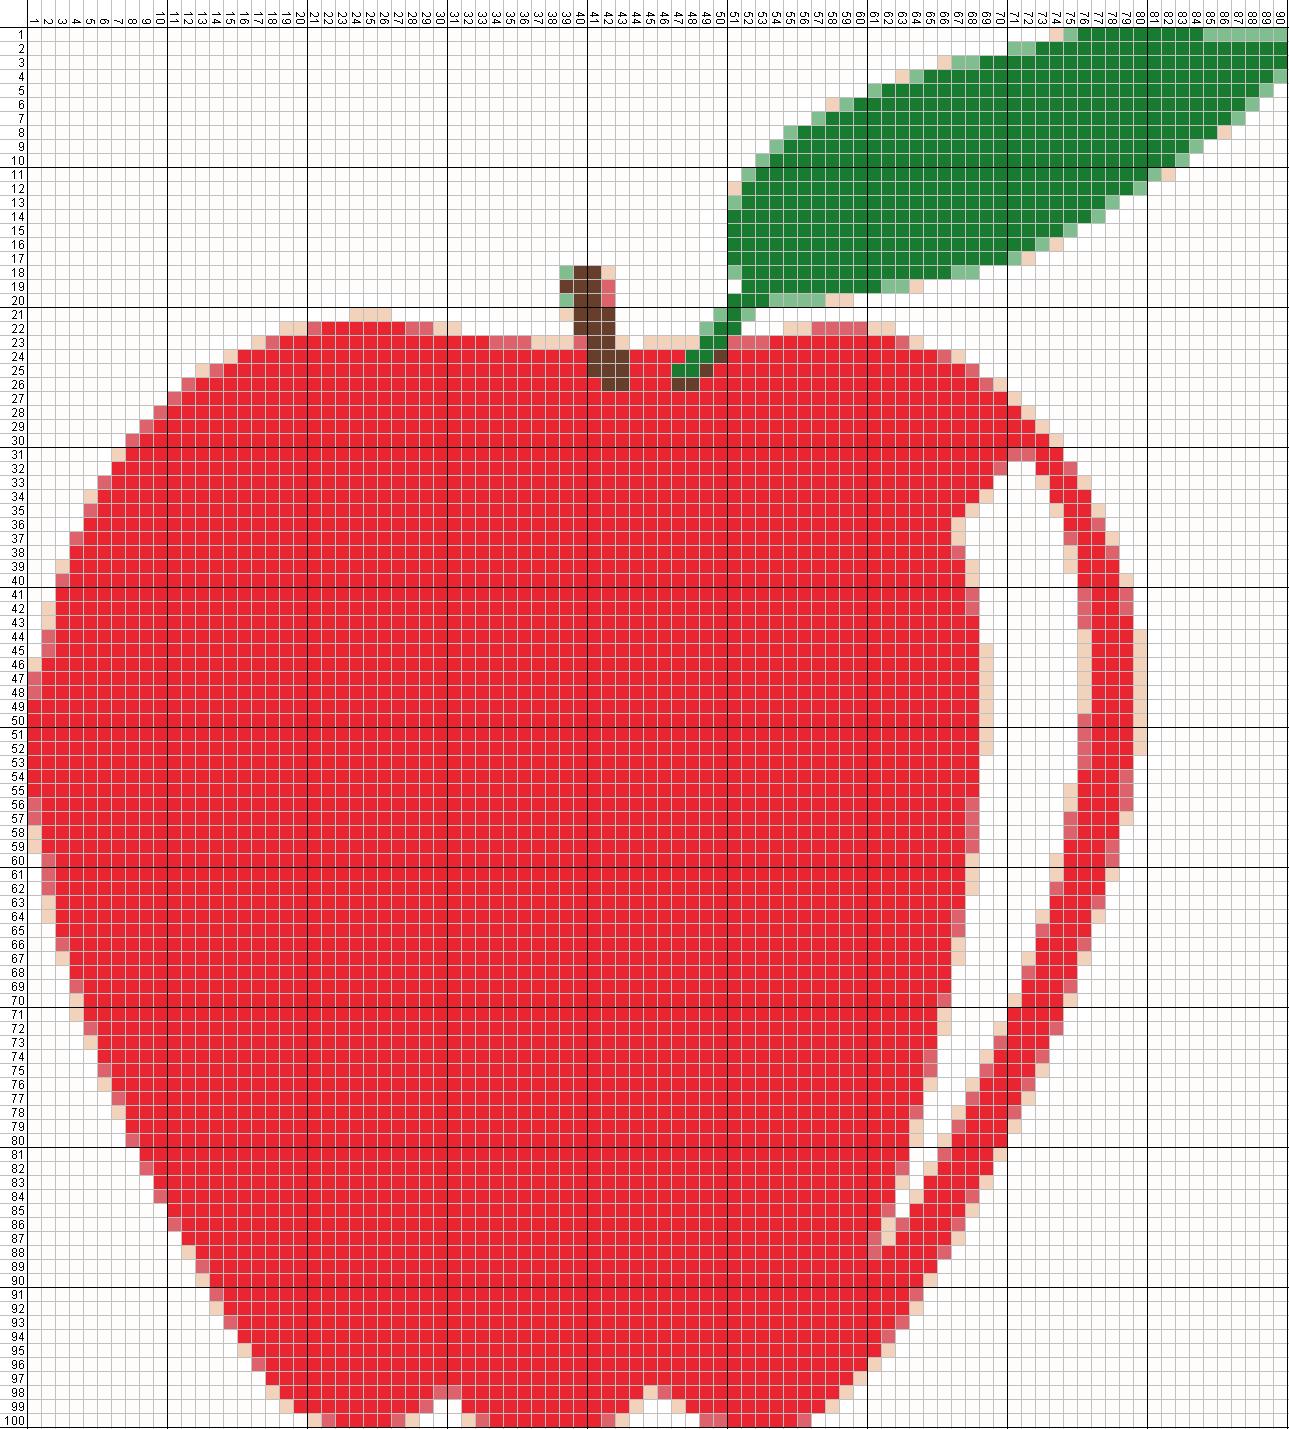  Gambar  Buah  Apel Sederhana golek gambar 